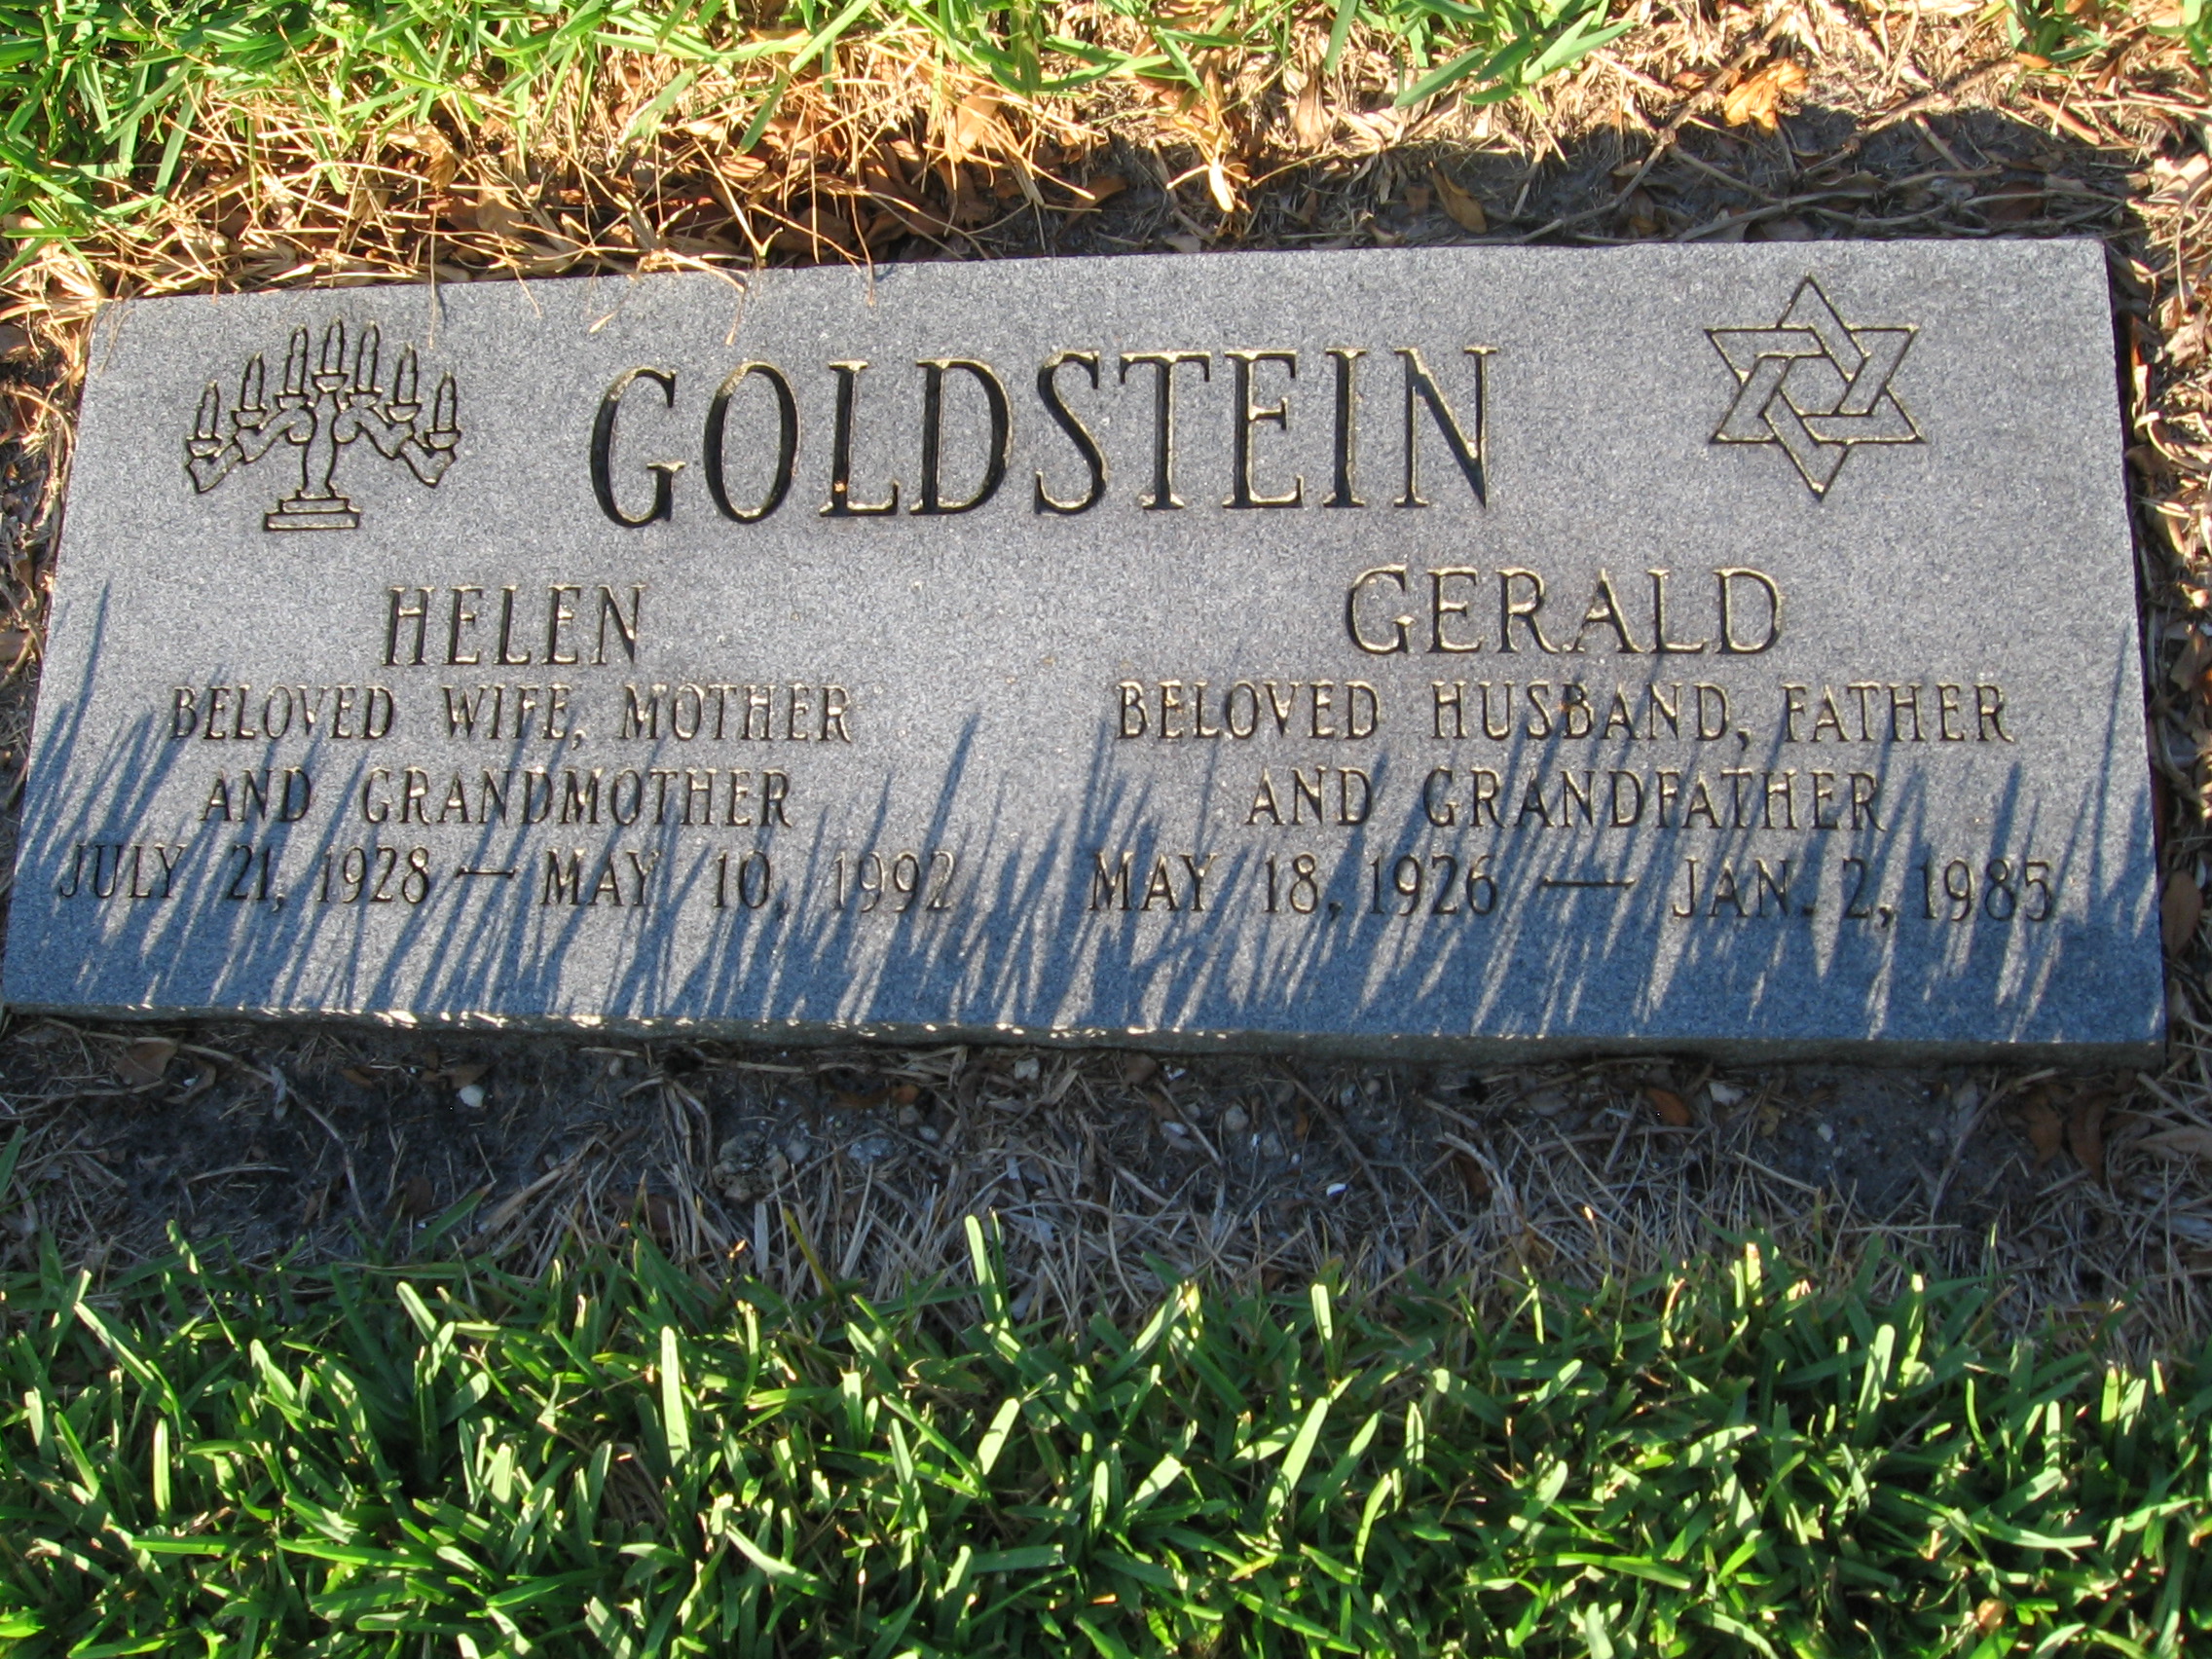 Gerald Goldstein